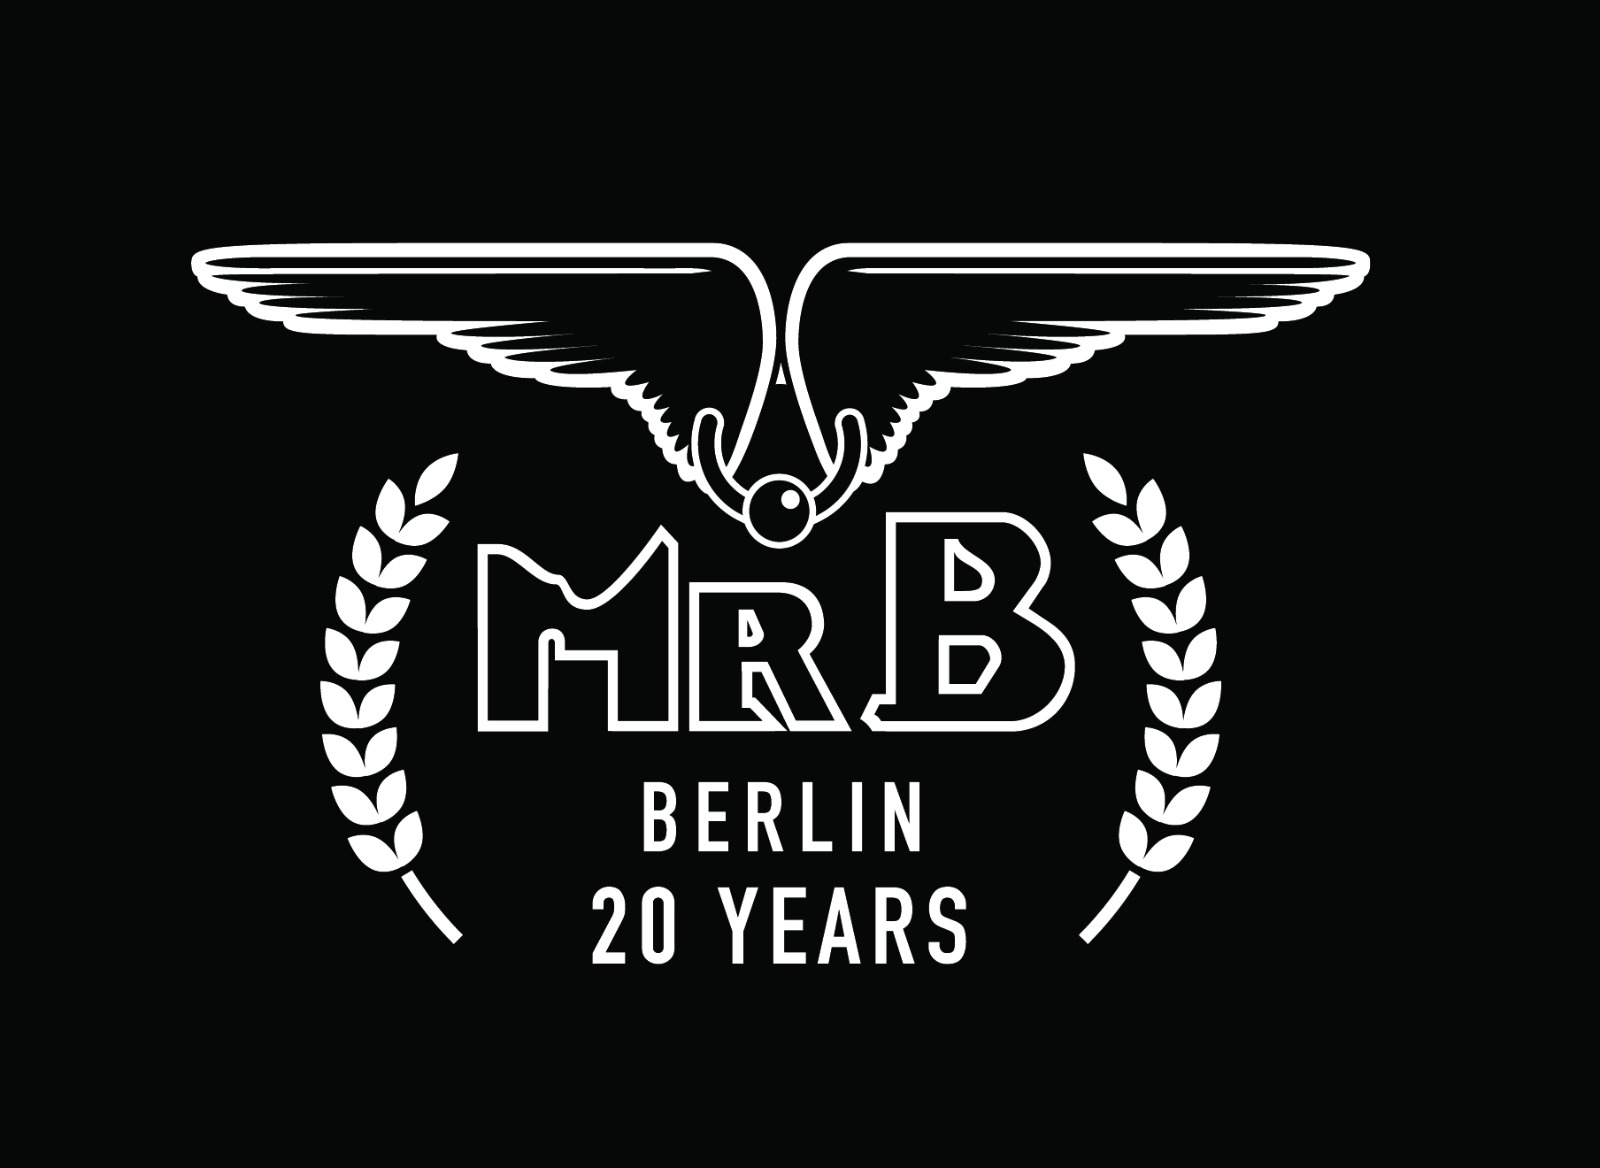 Mister b berlin